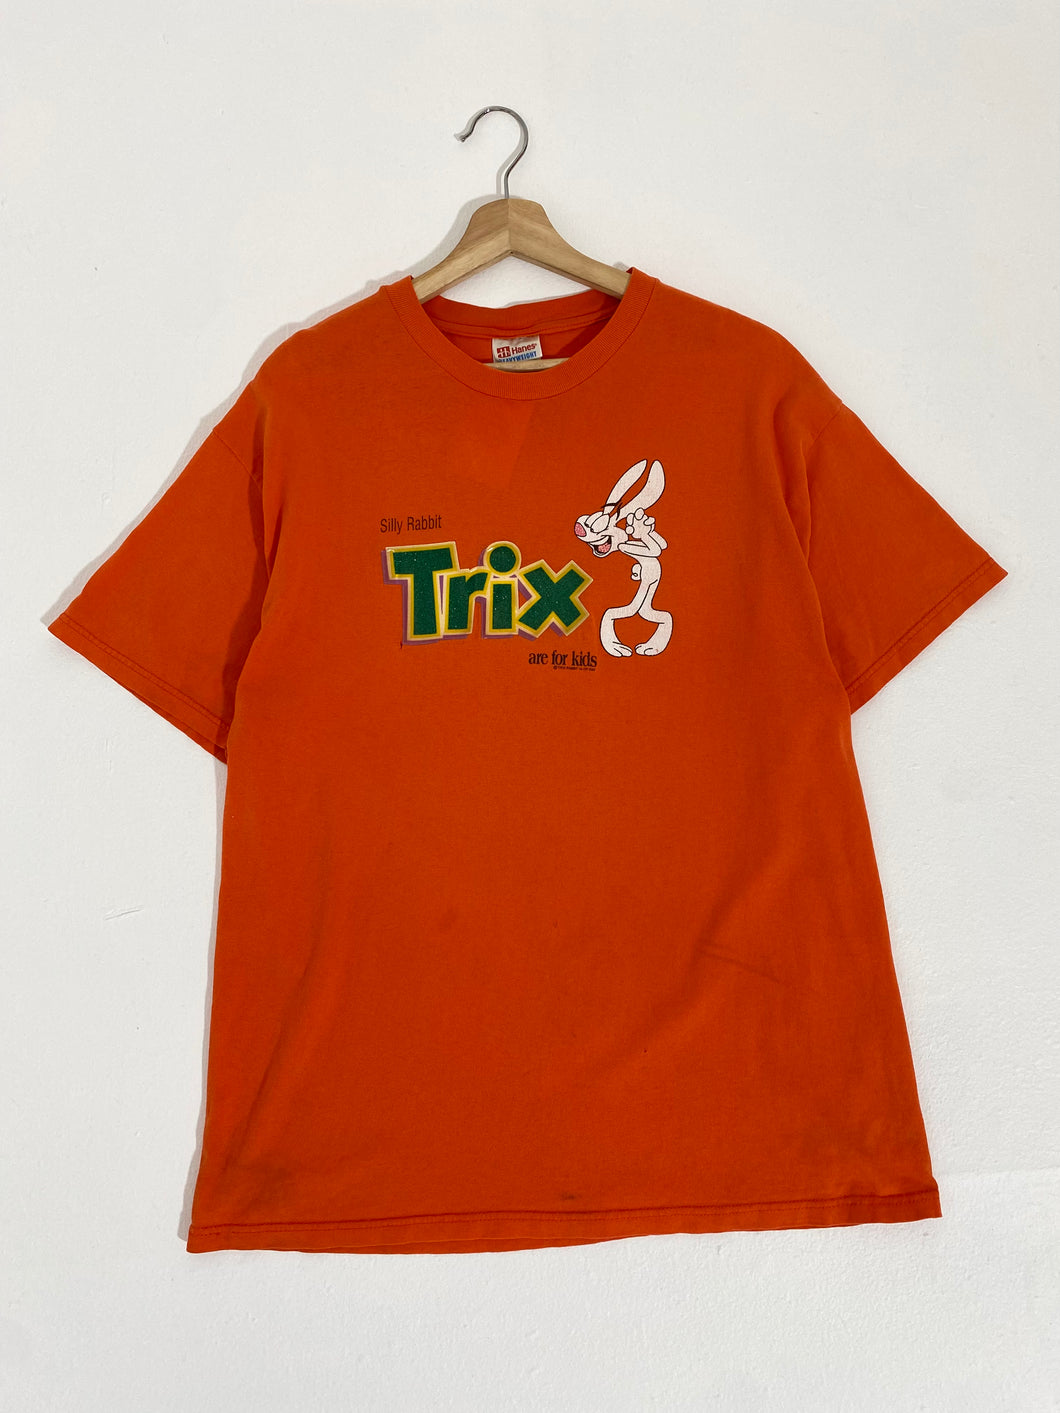 Vintage 1990's Trix Cereal T-Shirt Sz. L